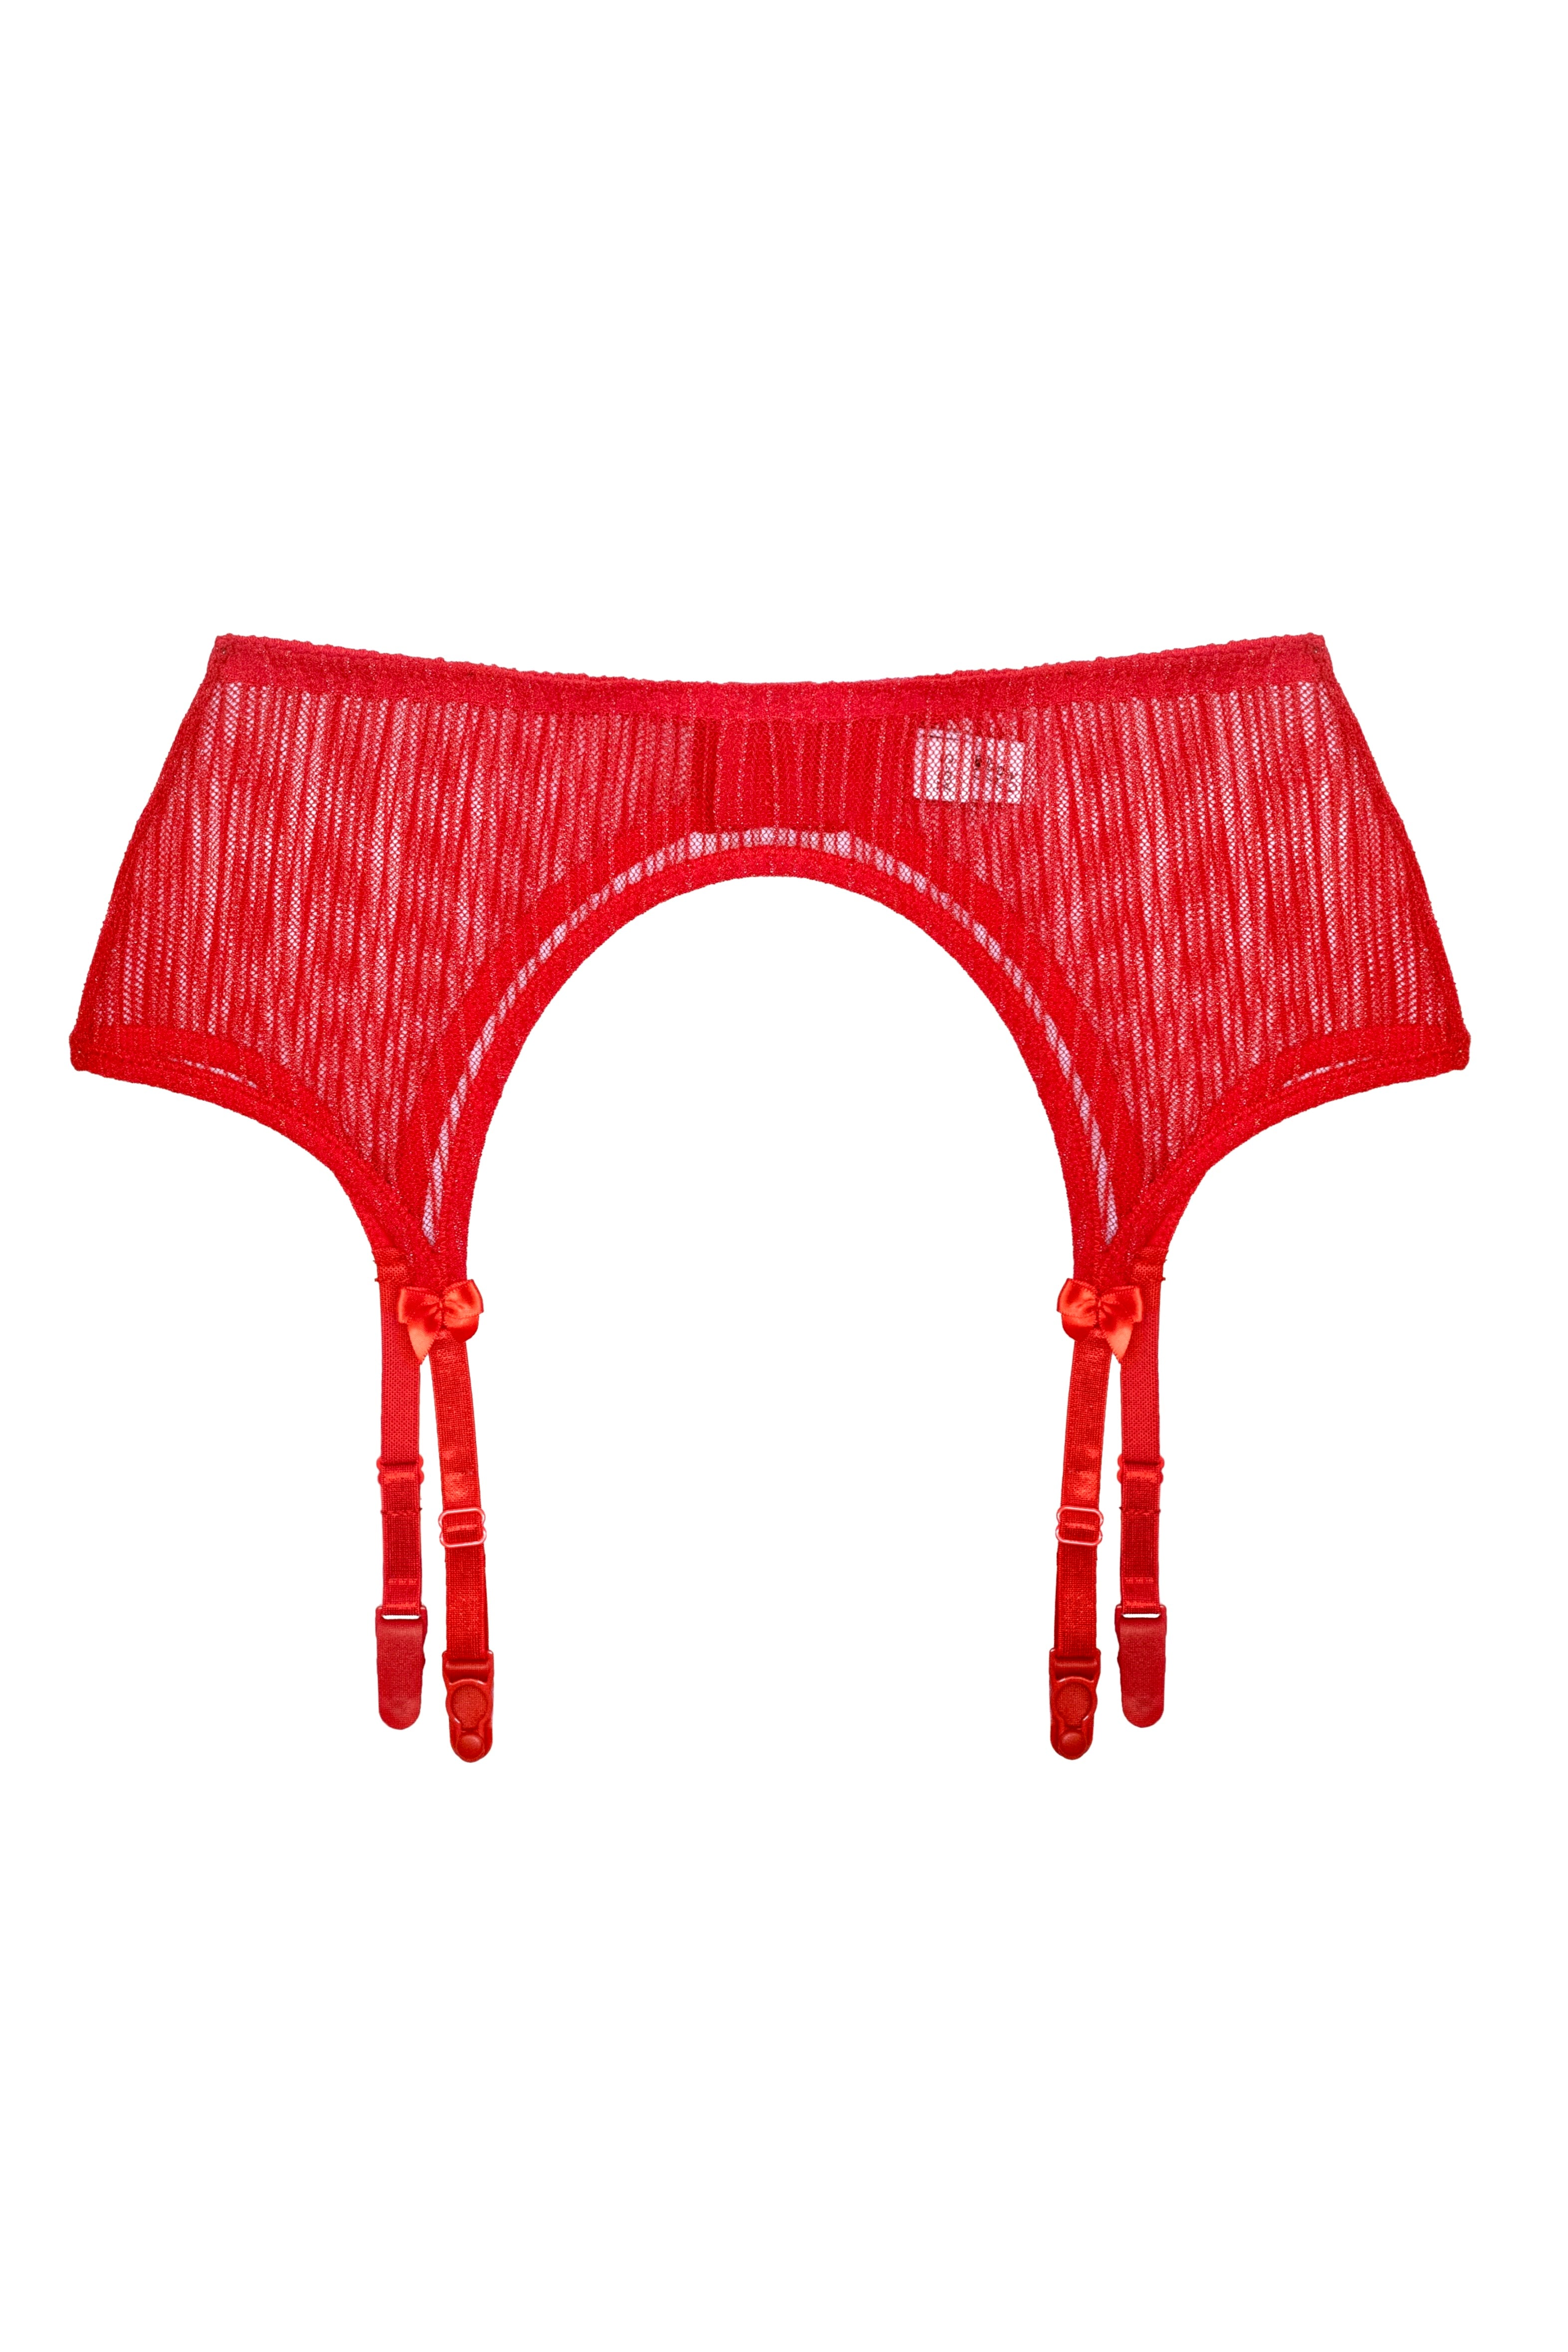 Lessie Red garter belt